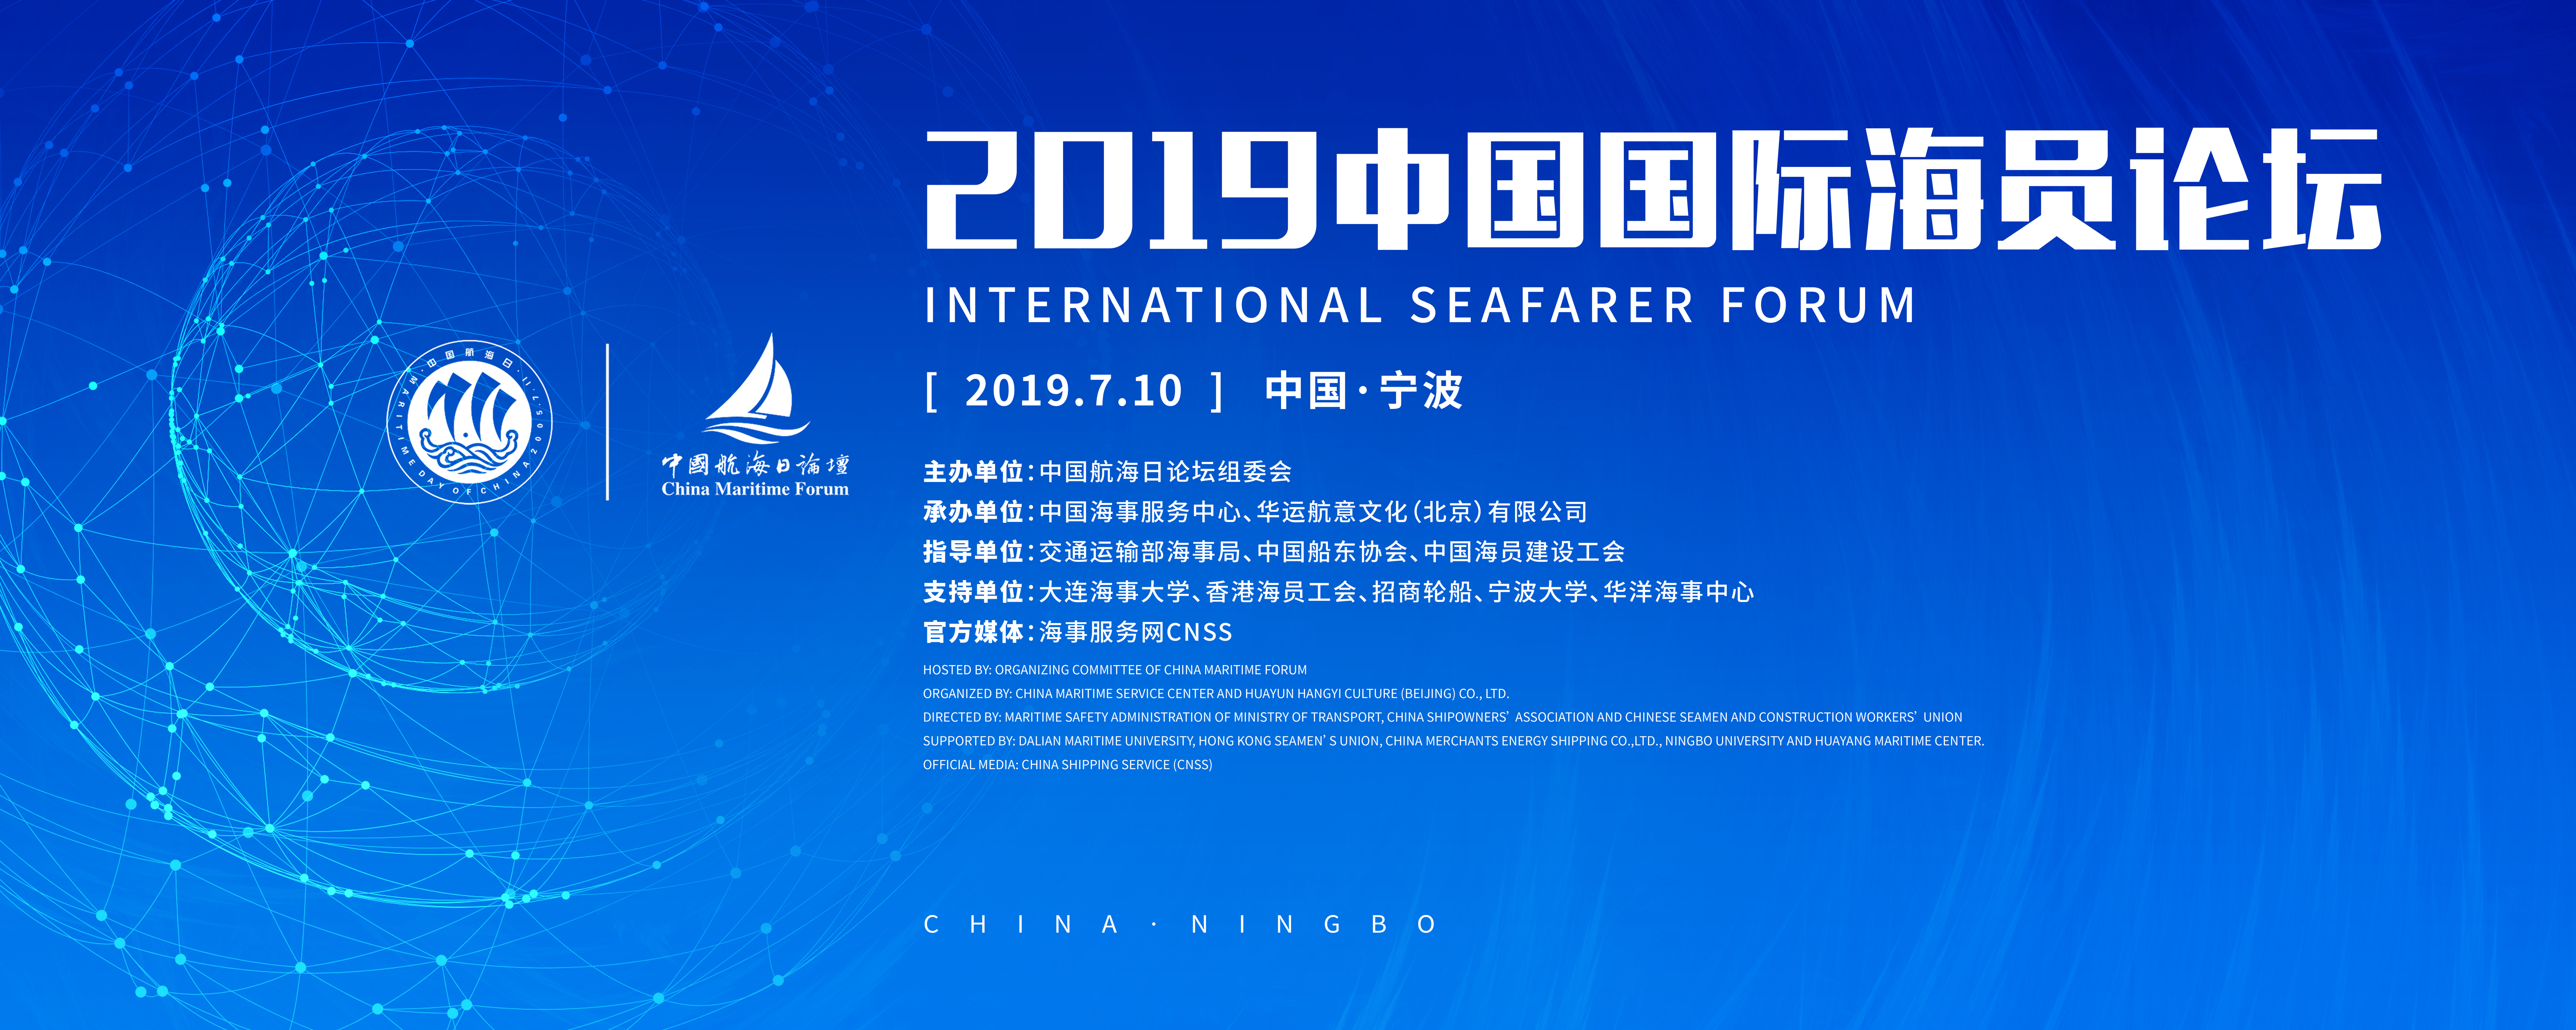 新趋势 谋发展 ——2019年中国国际海员论坛隆重开幕！